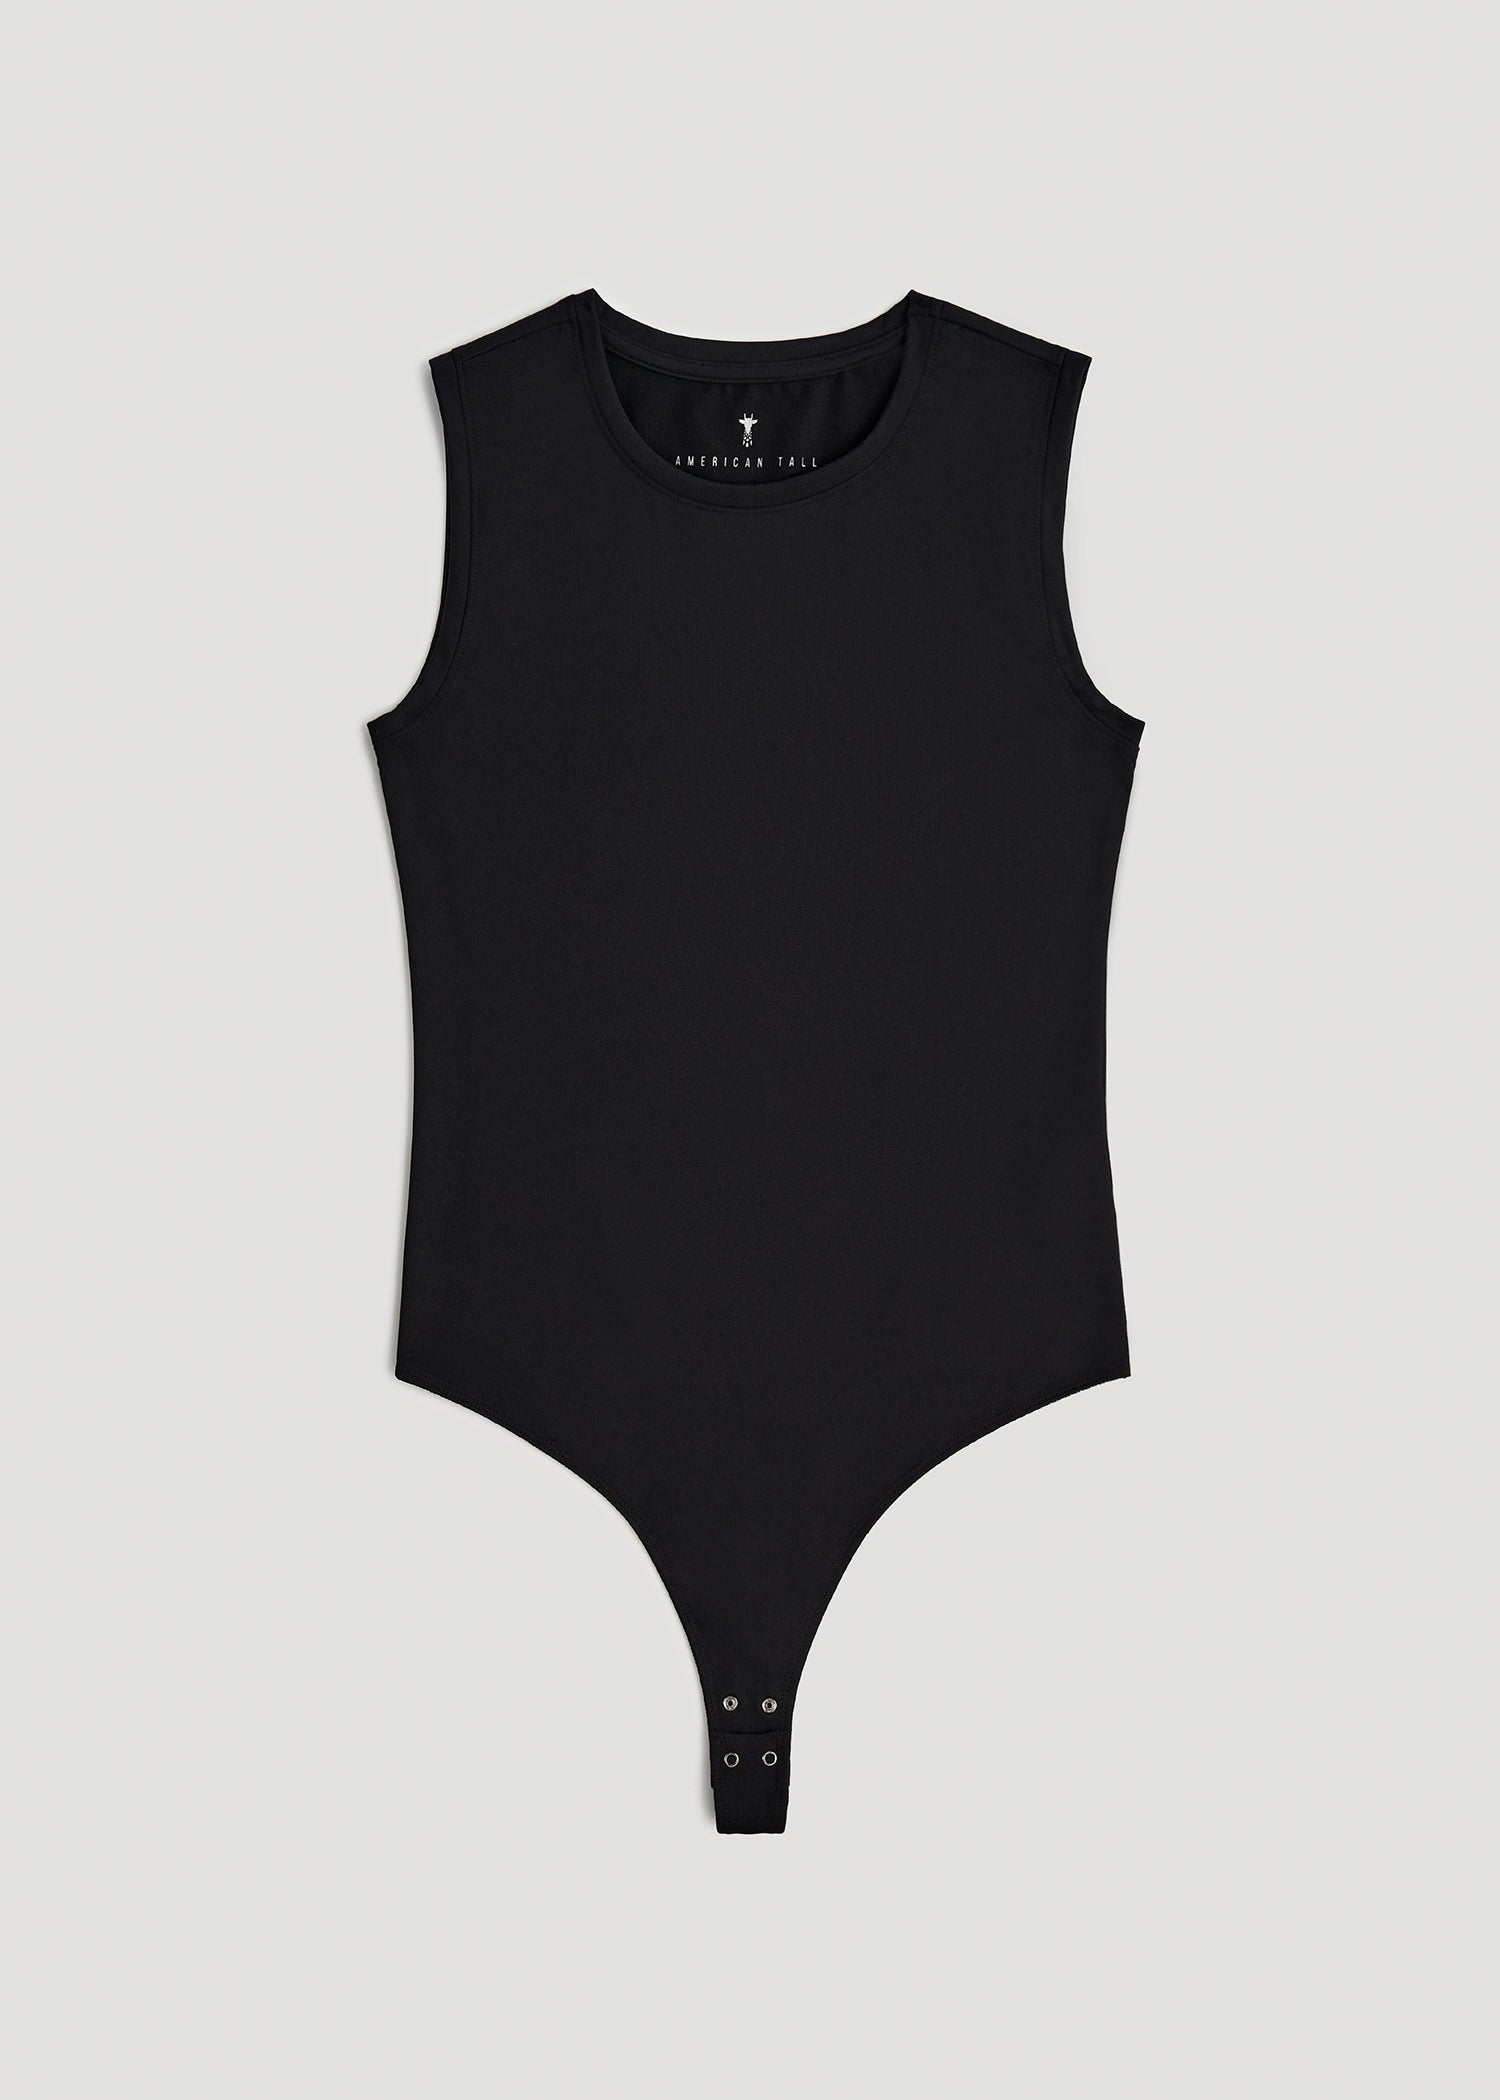 Sleeveless Crewneck Bodysuit for Tall Women in Black